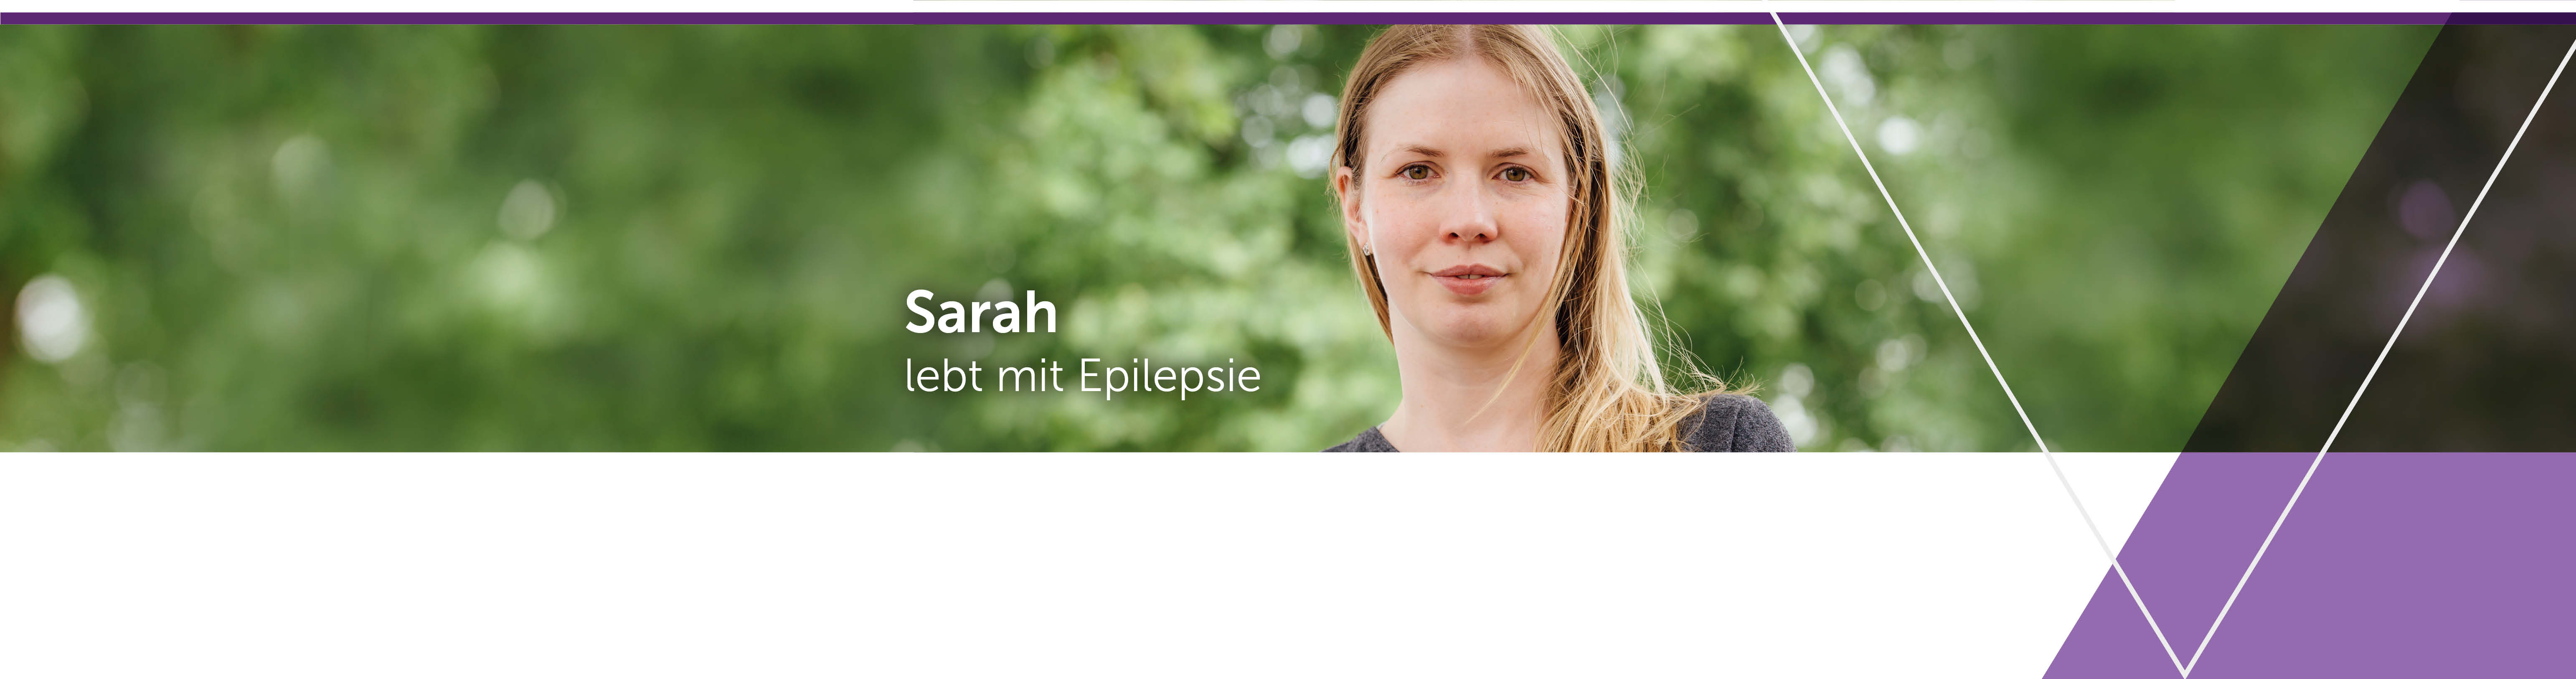 UCBCares bietet Unterstützung für Menschen mit Epilepsie: Service.